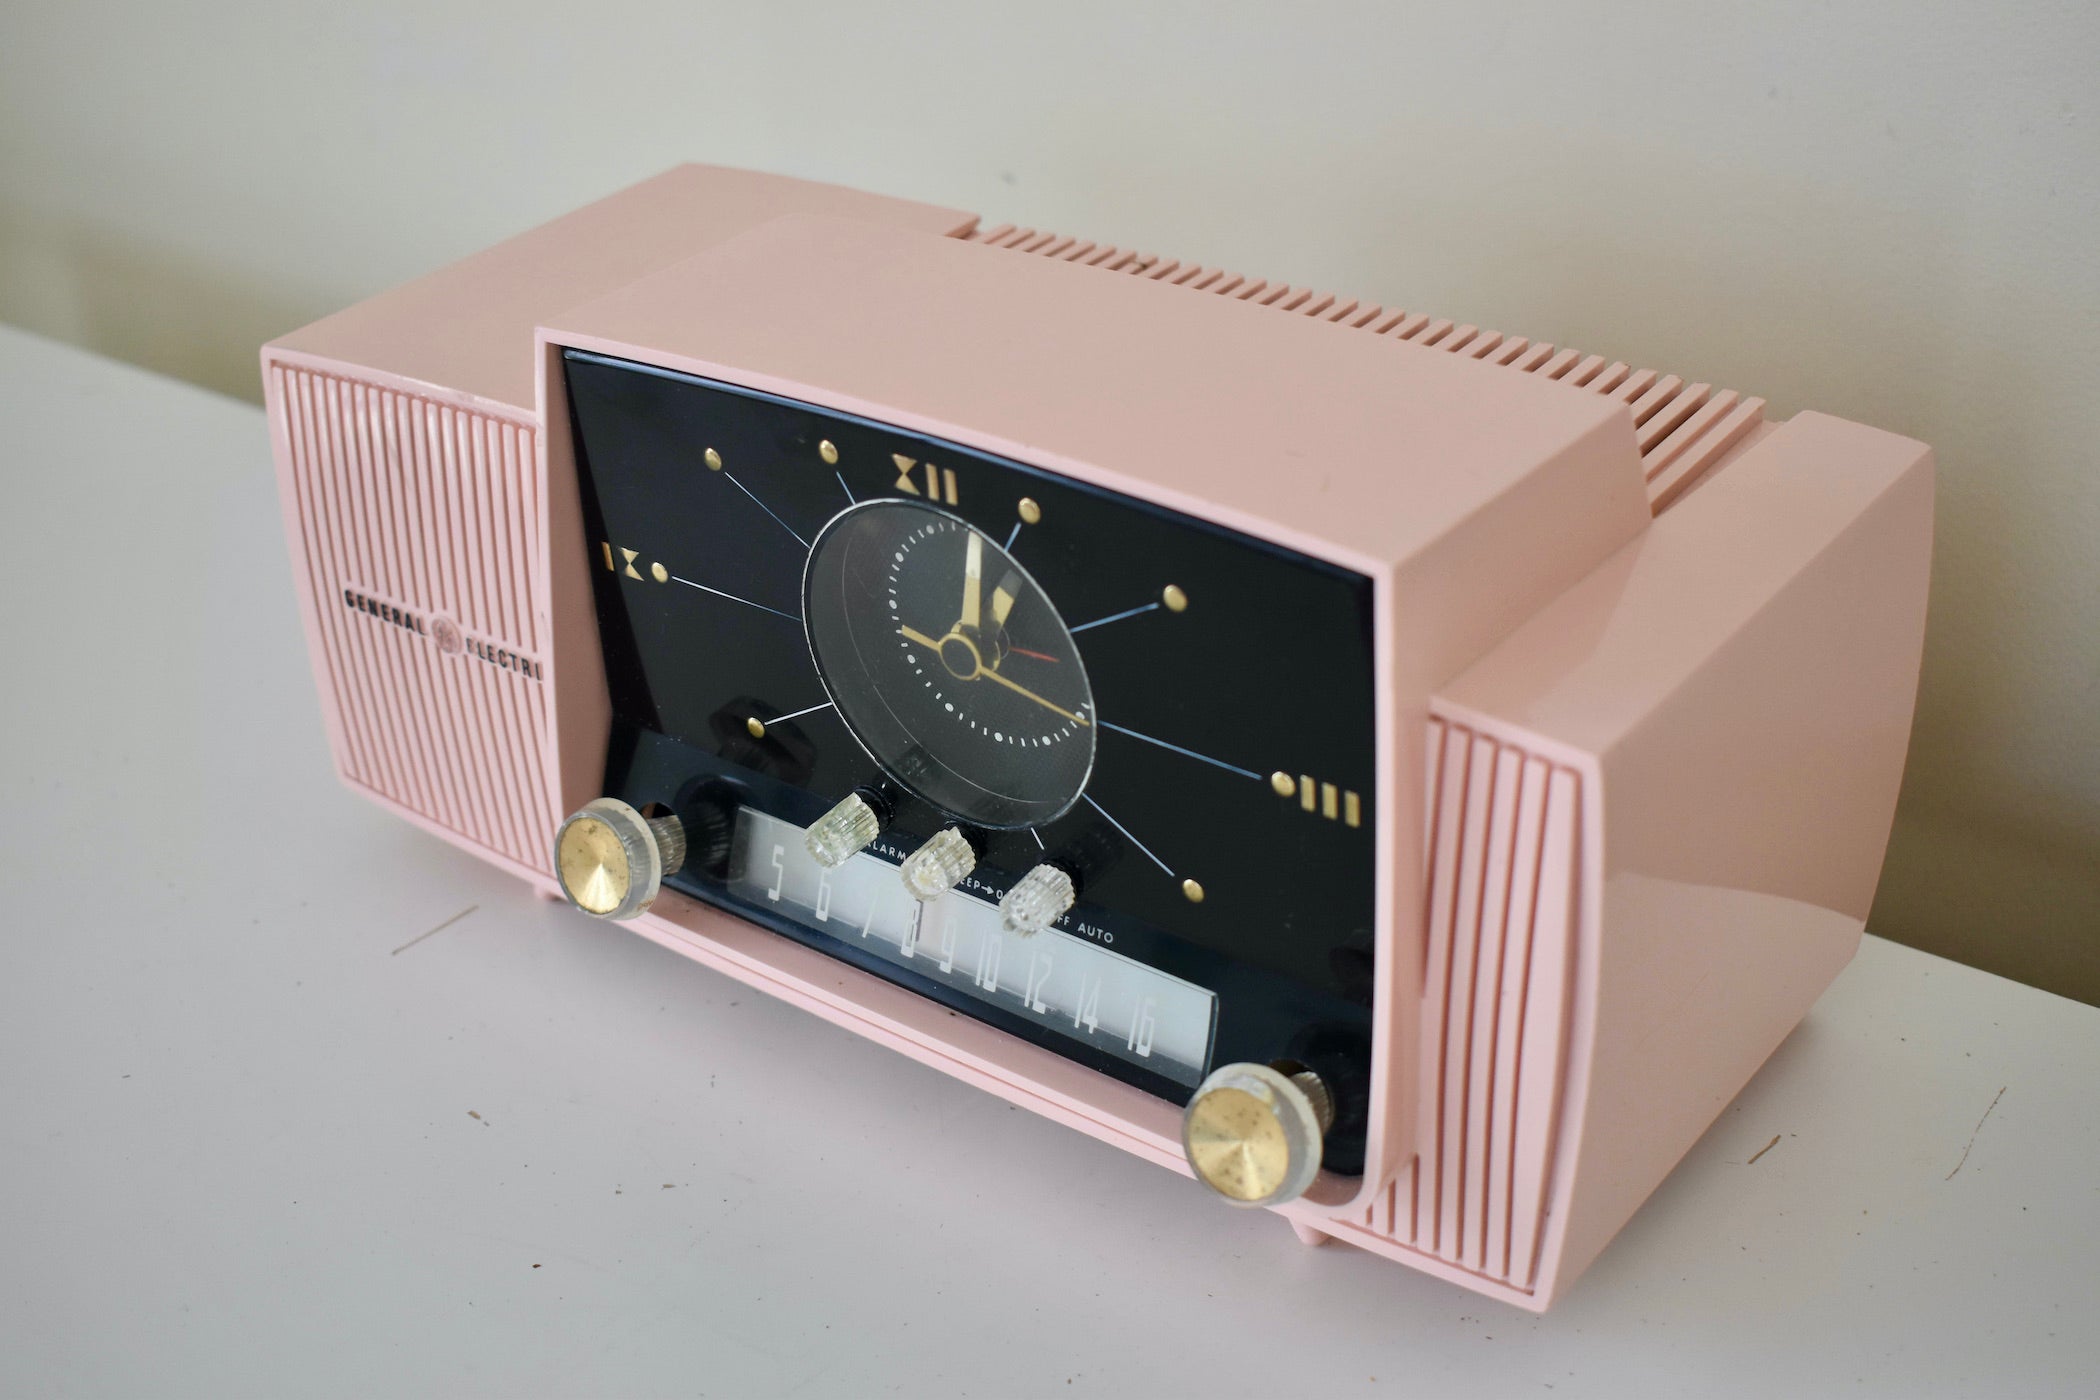 Bluetooth Ready To Go - プリンセス ピンク 1959 GE ゼネラル エレクトリック モデル 913D AM 真空管クロック ラジオ